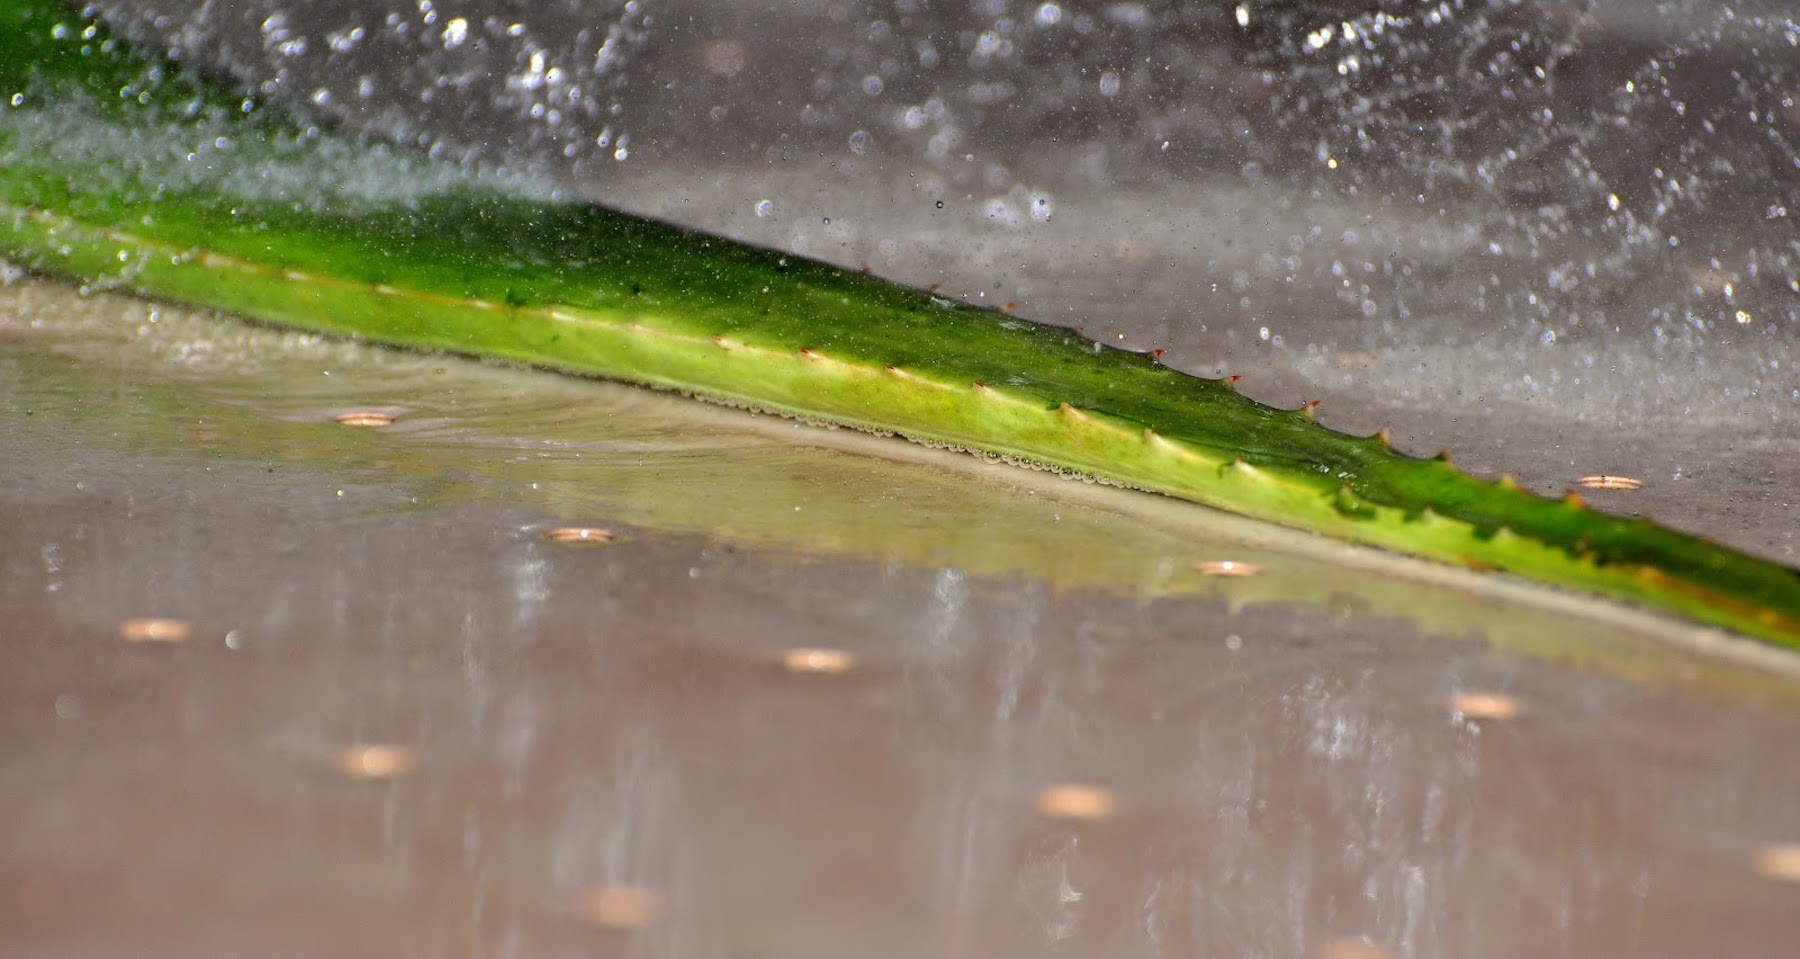 Extracción y estabilización en frío del jugo de Aloe vera